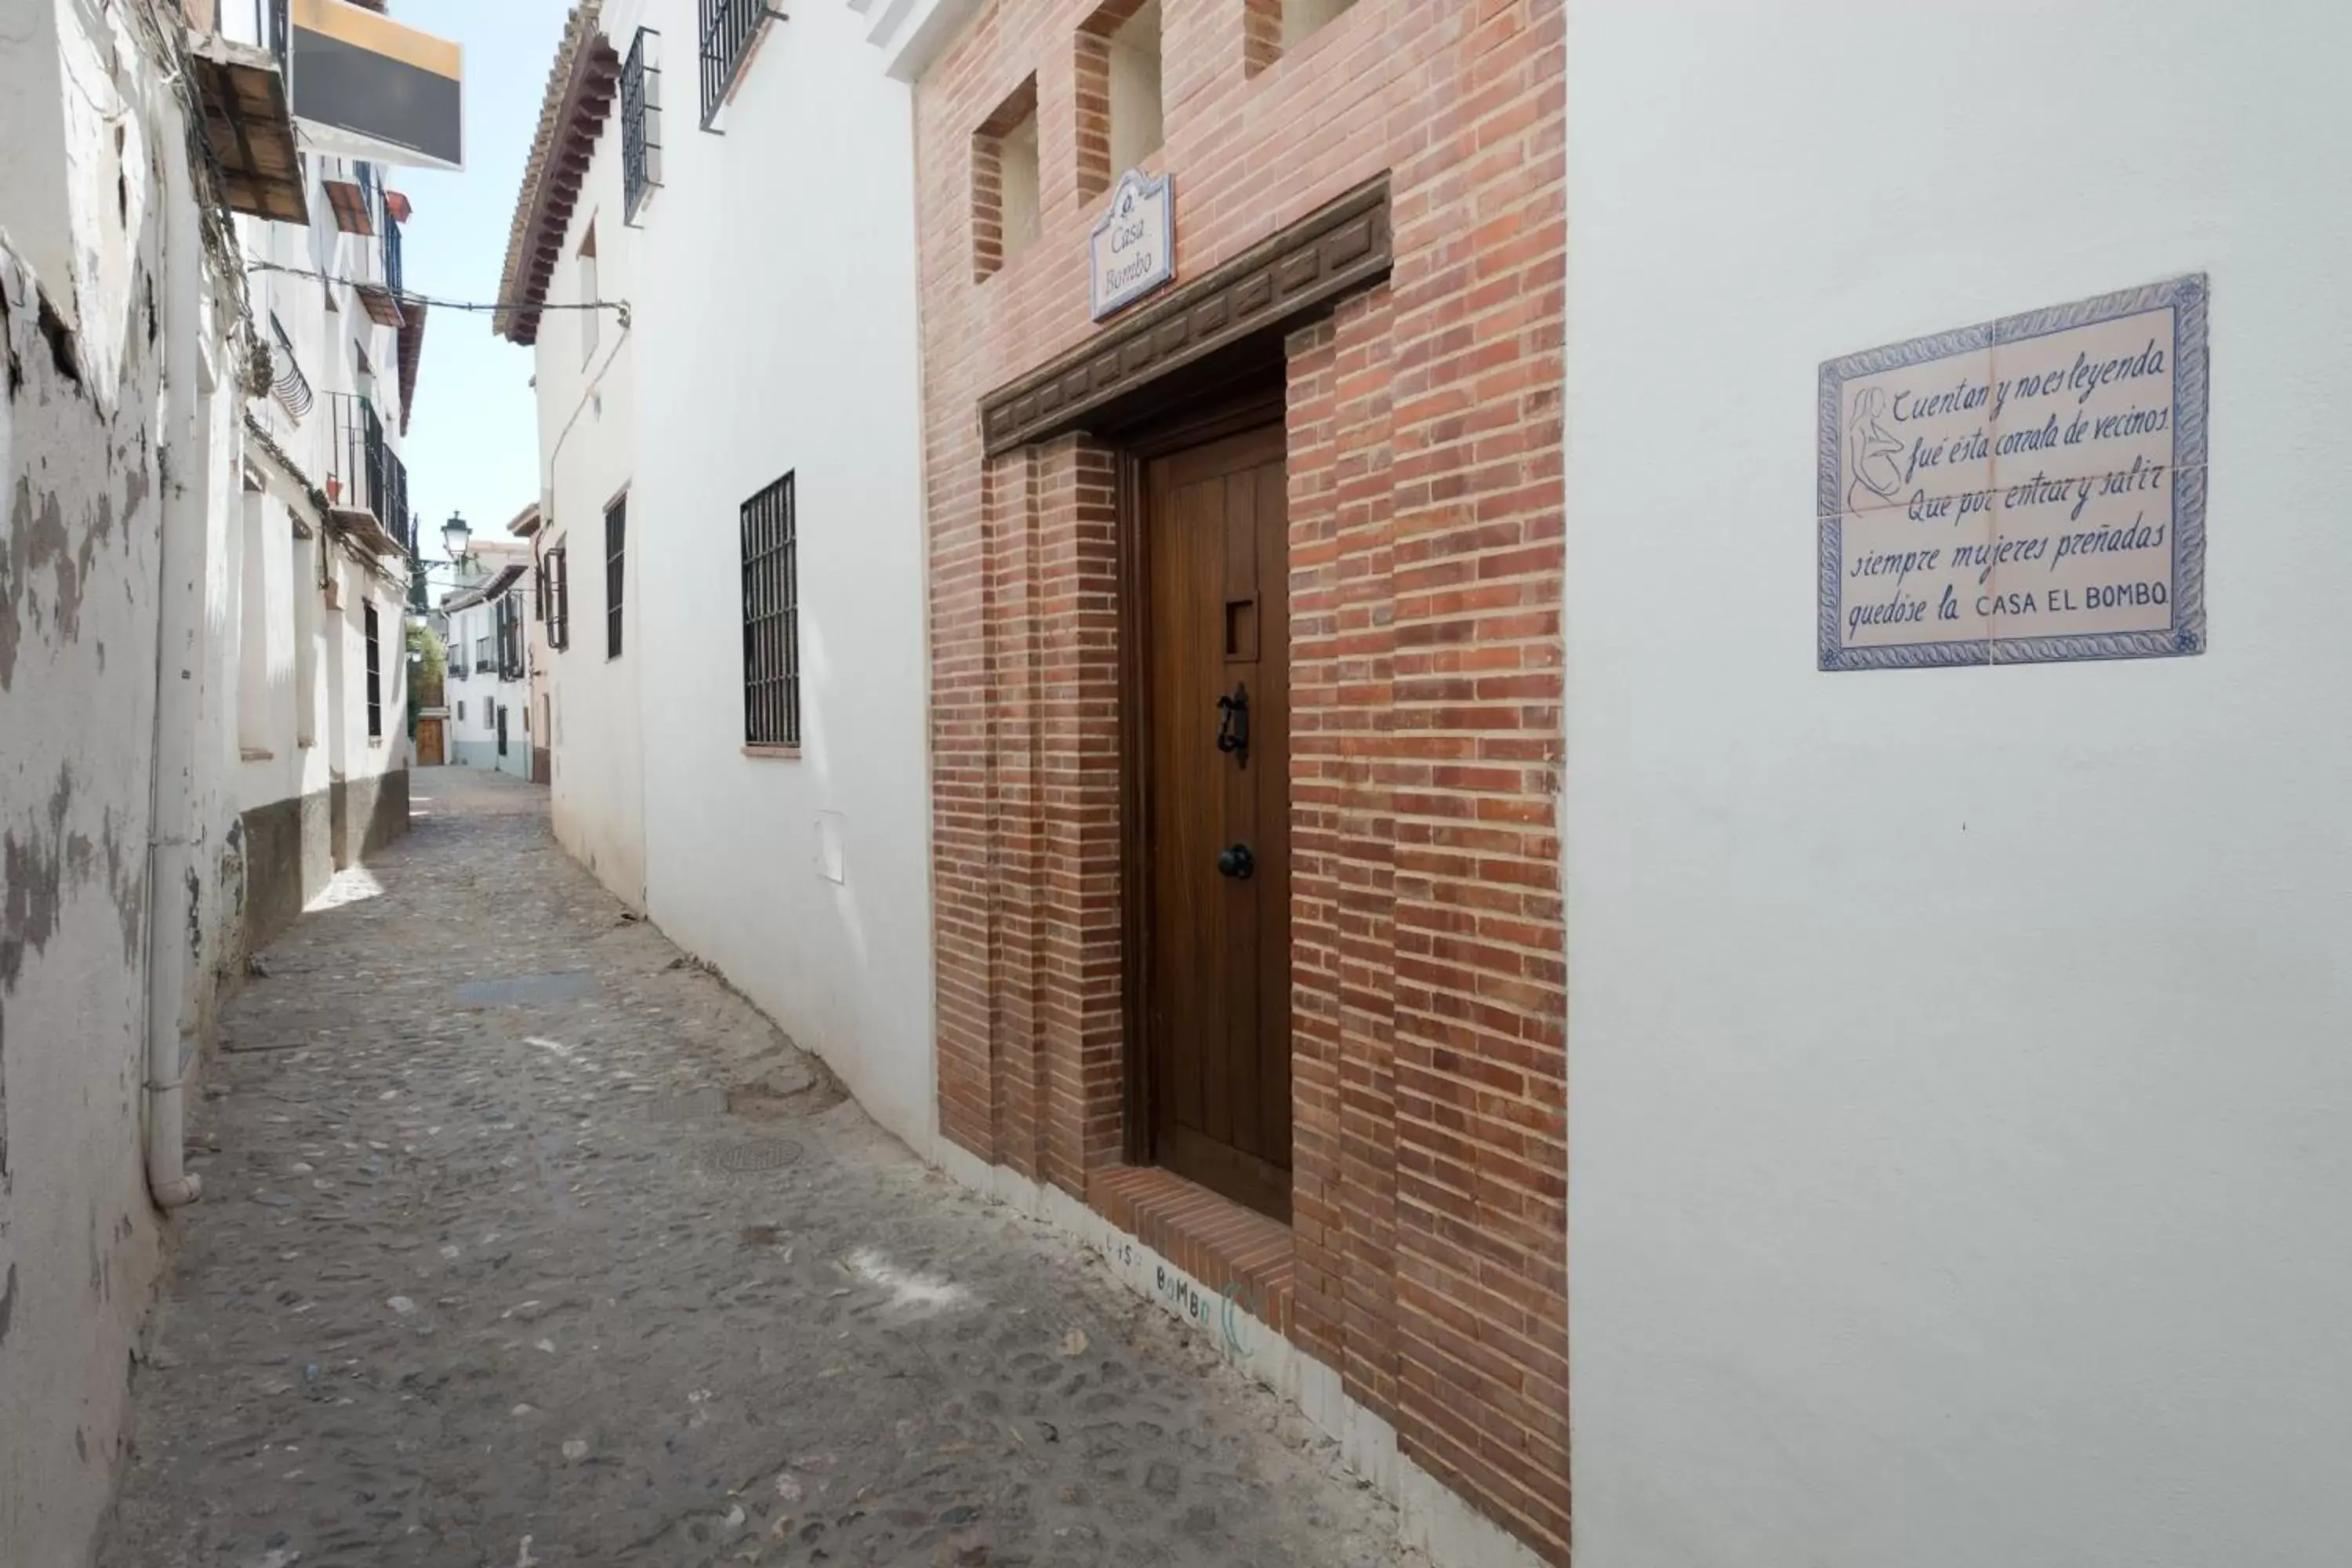 Facade/entrance in Casa Bombo